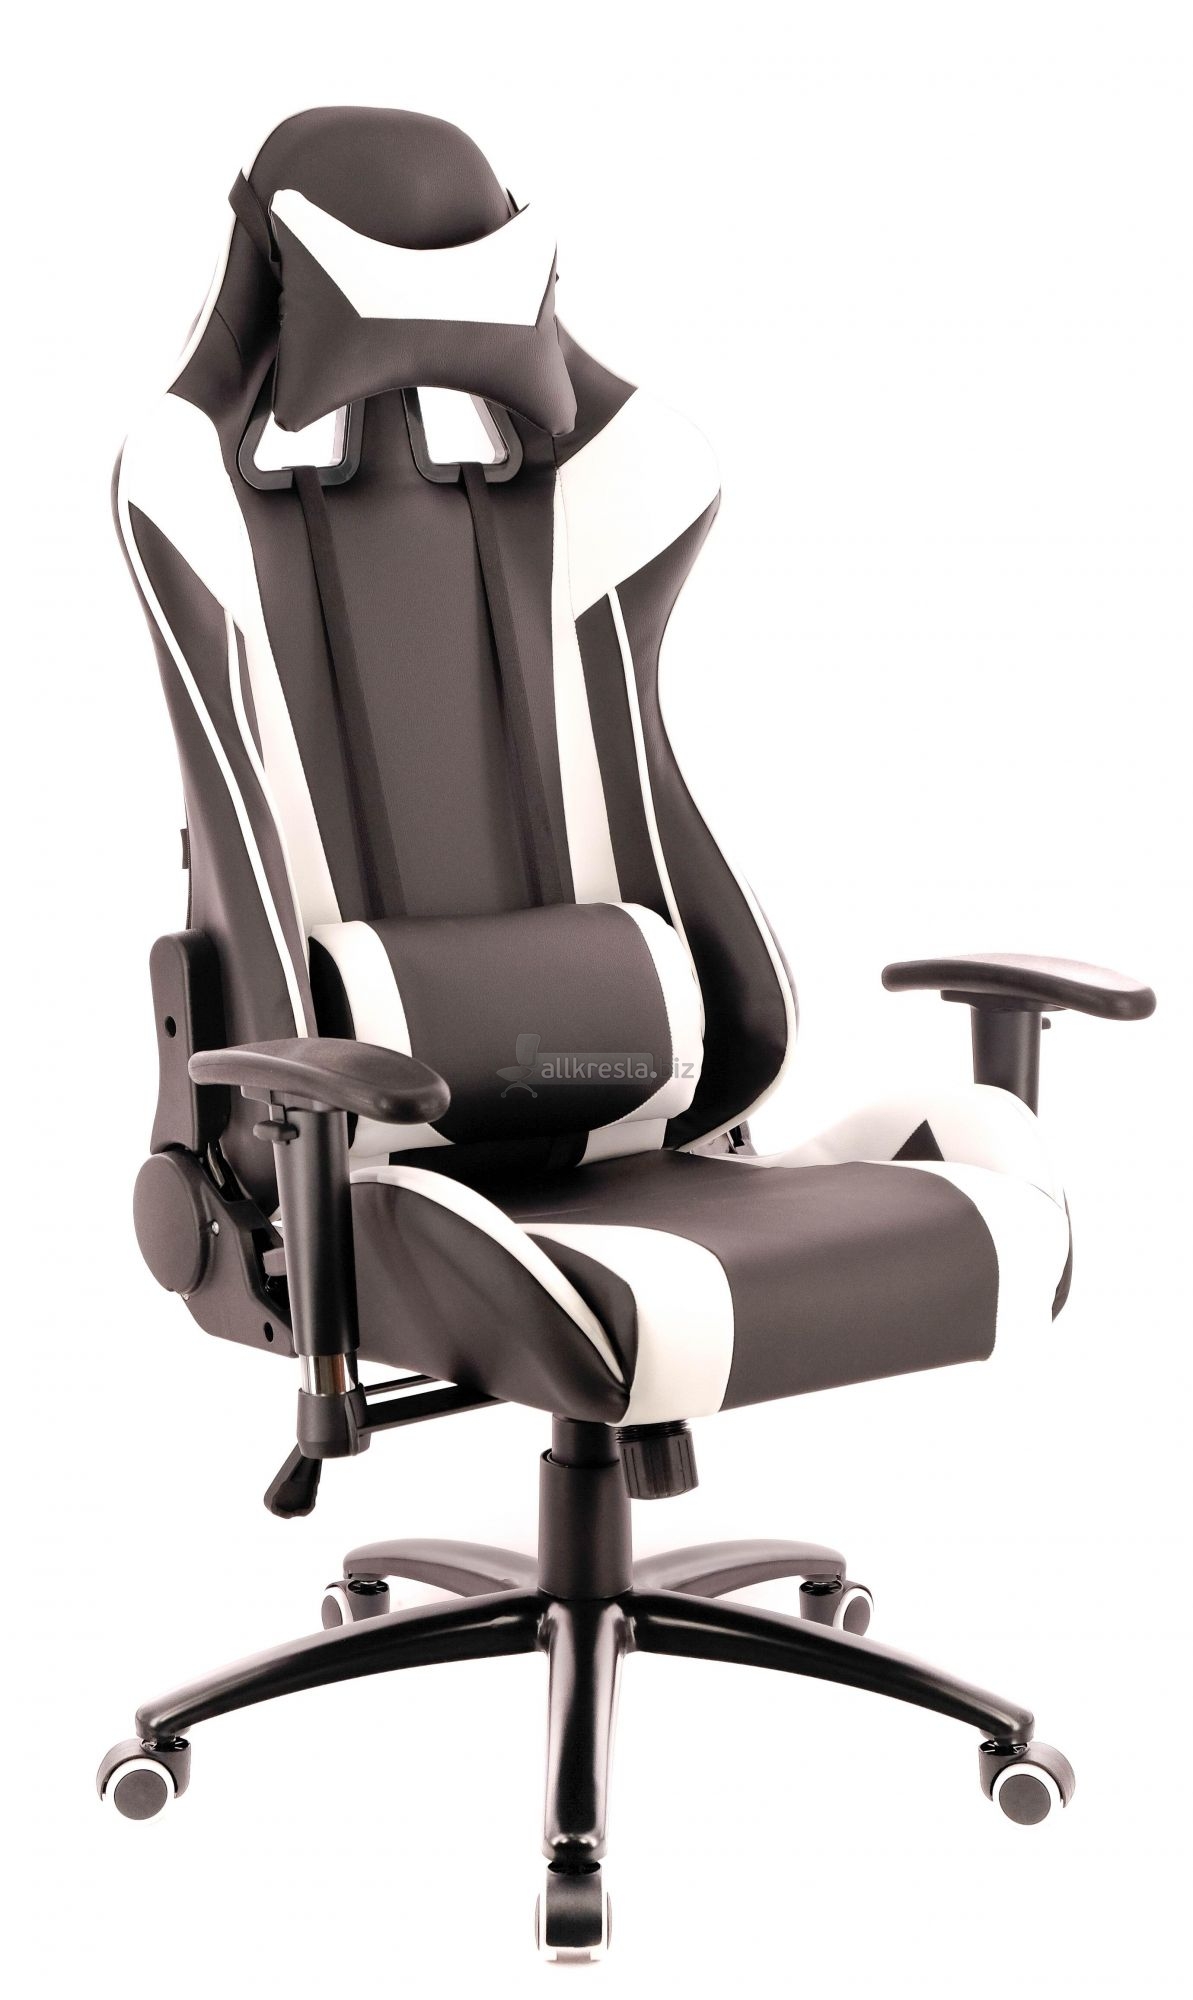 Купить геймерское кресло EvP Lotus S6 (Лотос)